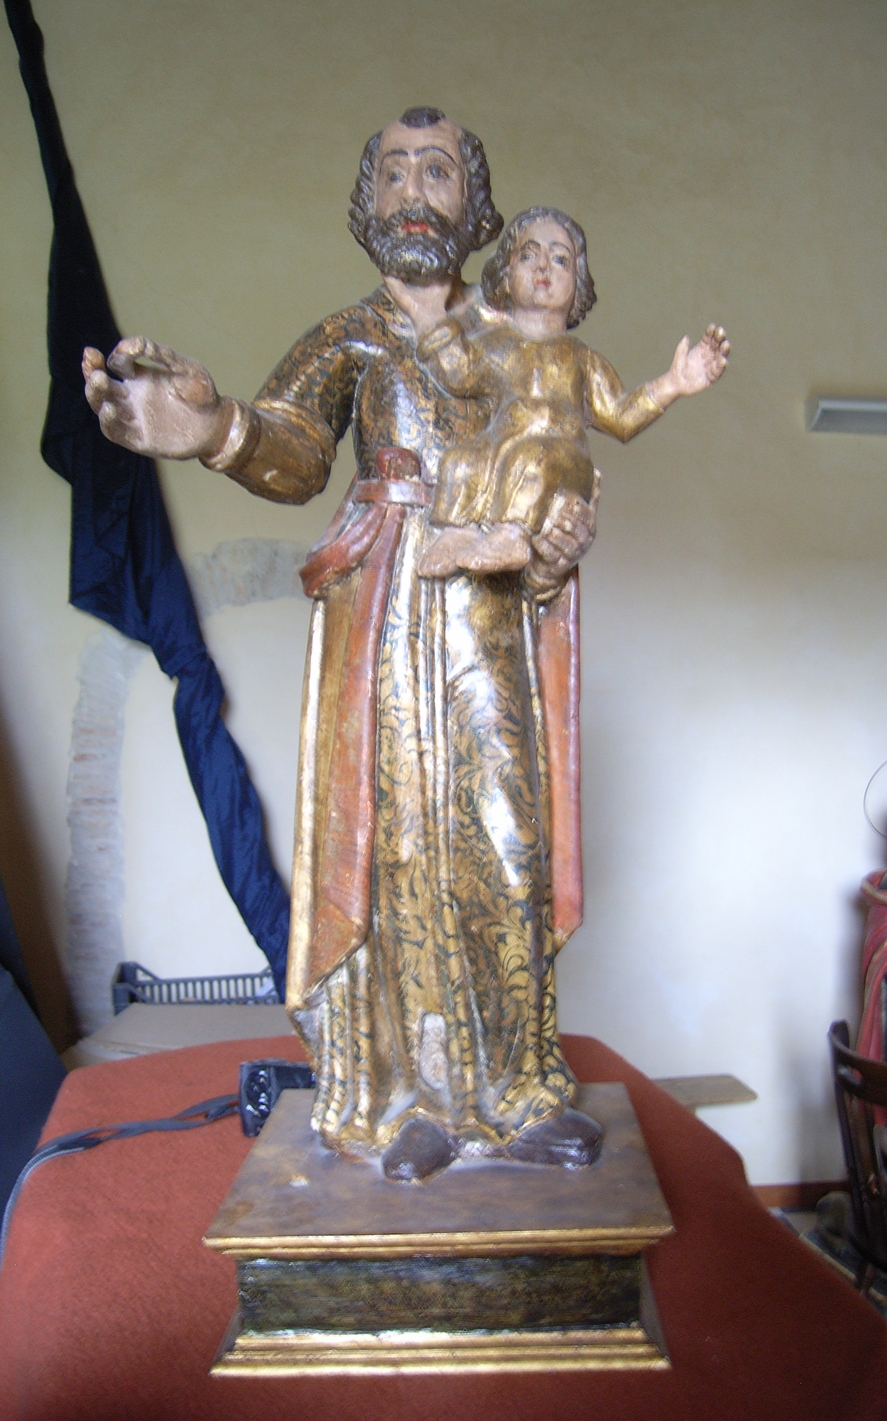 San giuseppe e gesù bambino (statua)